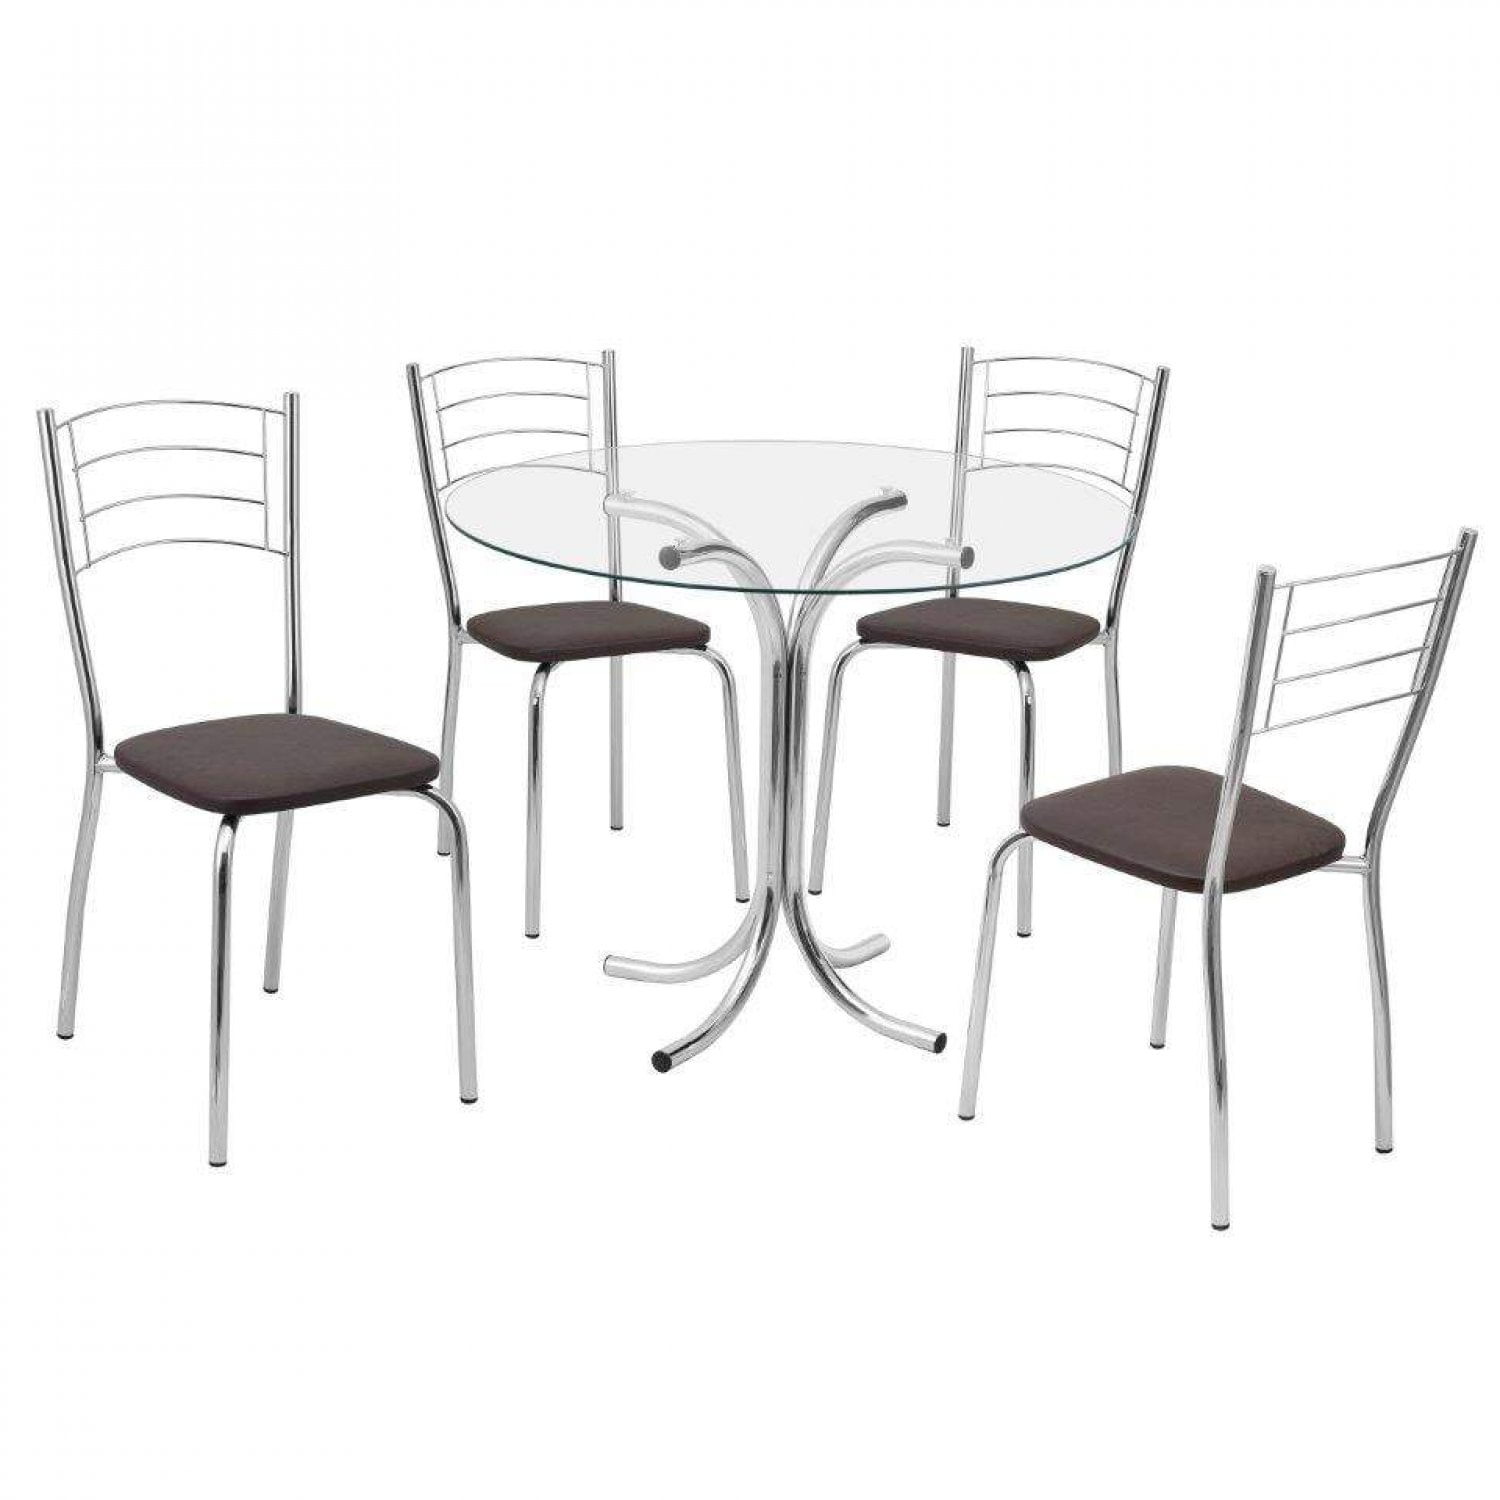 Conjunto de Mesa de Plástico Redonda 70cm e 4 Cadeiras Colonial Branco